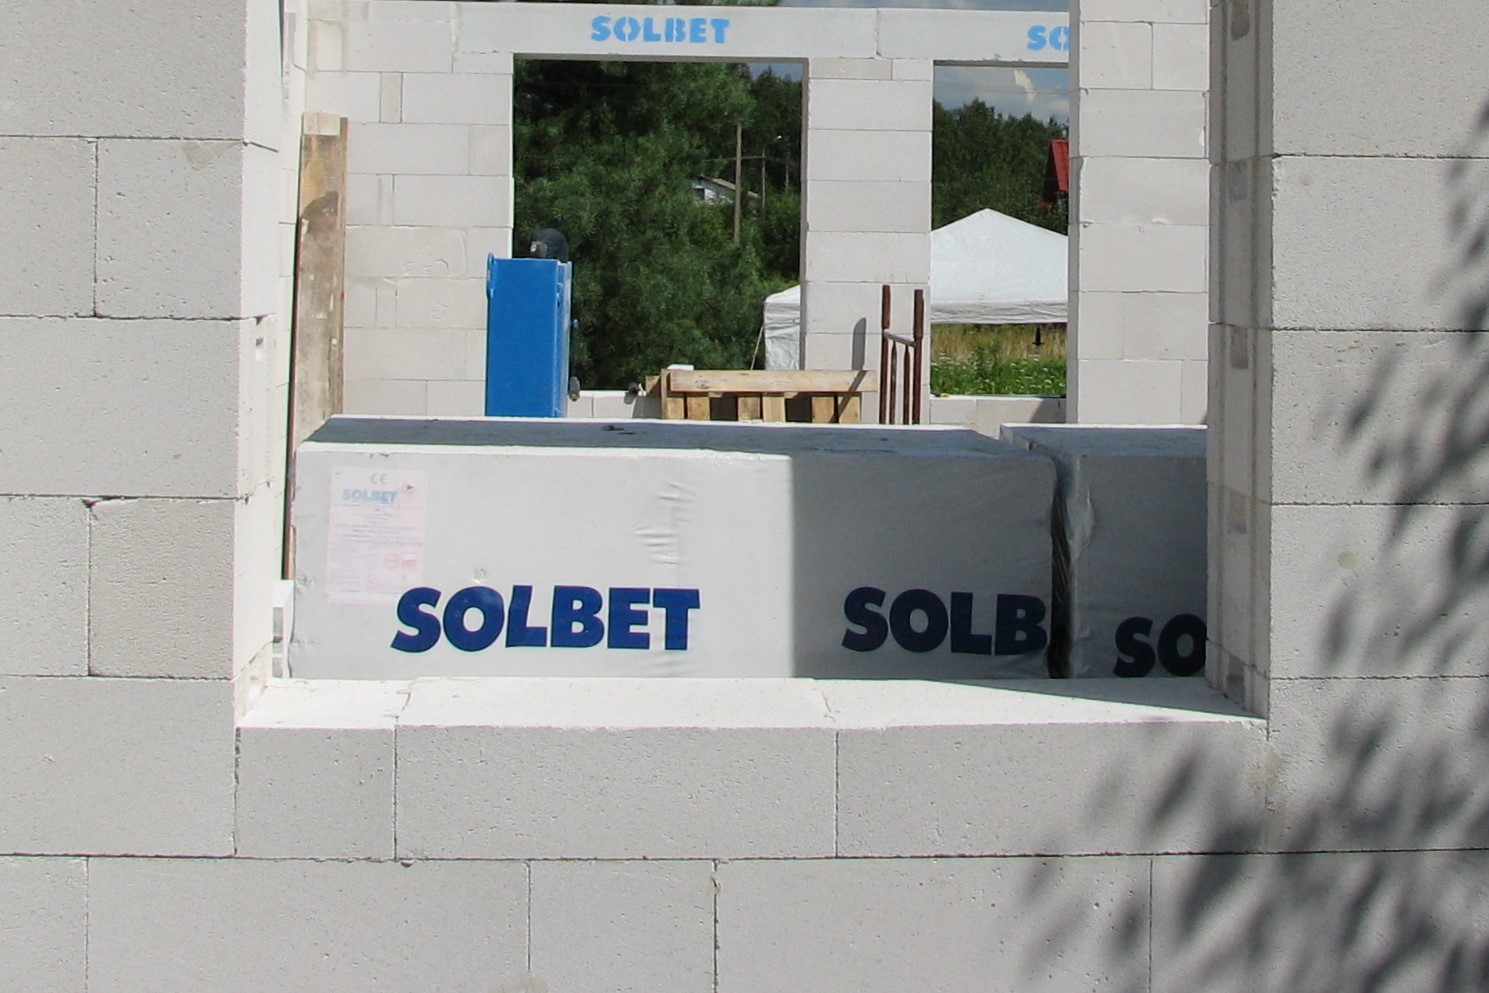 Zmiany wysokości otworów okiennych najłatwiej wyprowadzić dociętymi bloczkami lub układanymi poziomo płytkami z betonu komórkowego (fot. SOLBET)